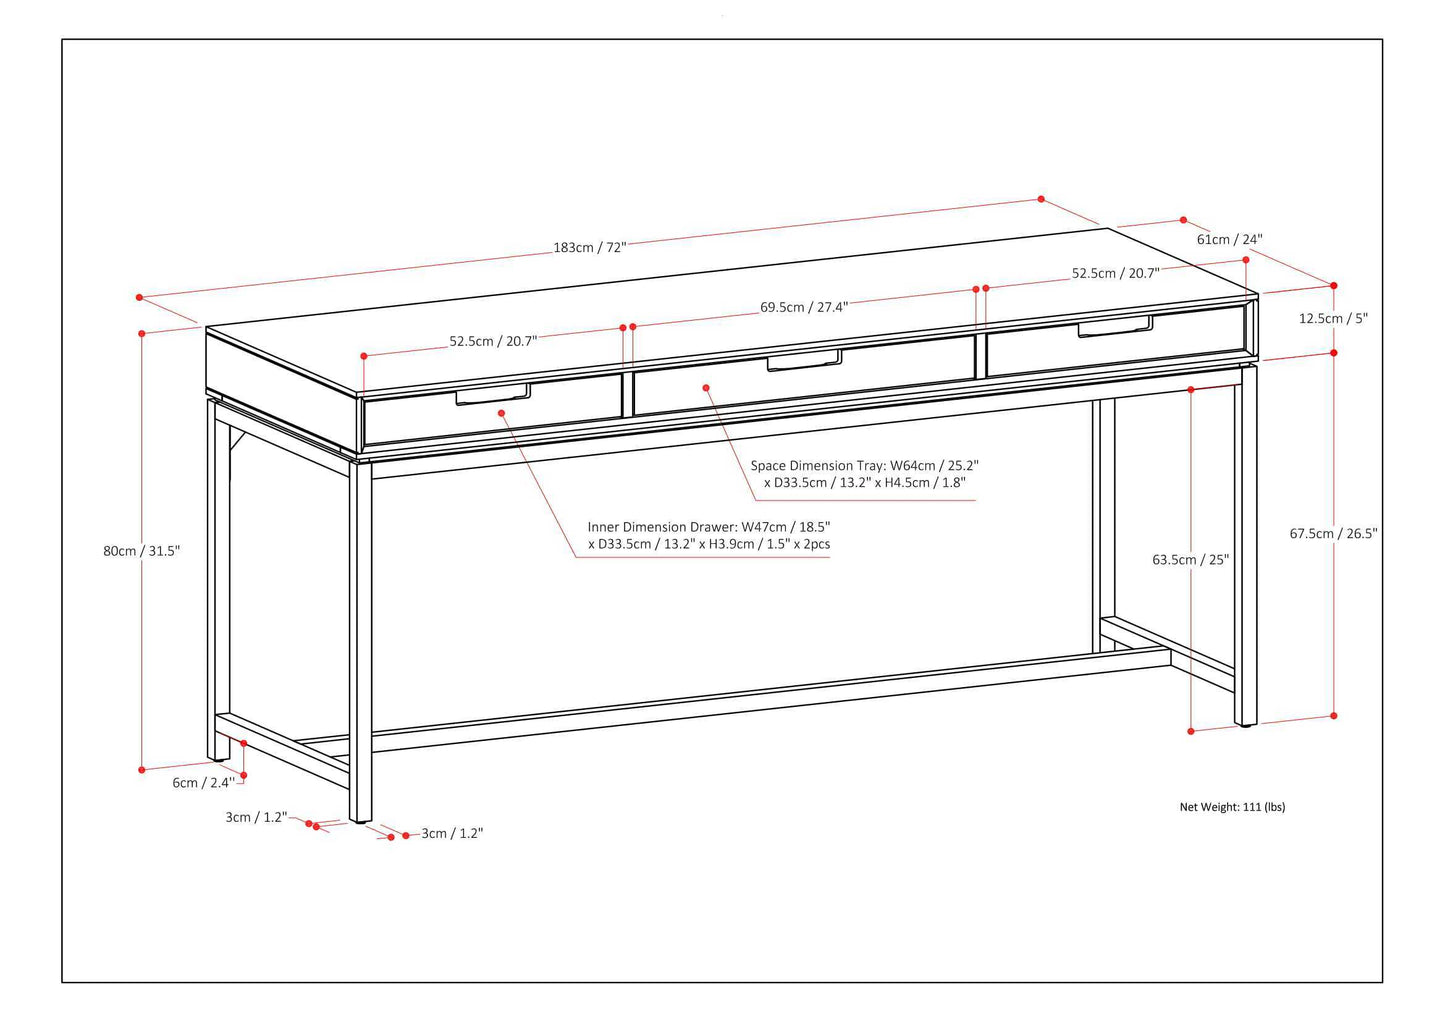 Banting - Mid Century Wide Desk - Oak Veneer